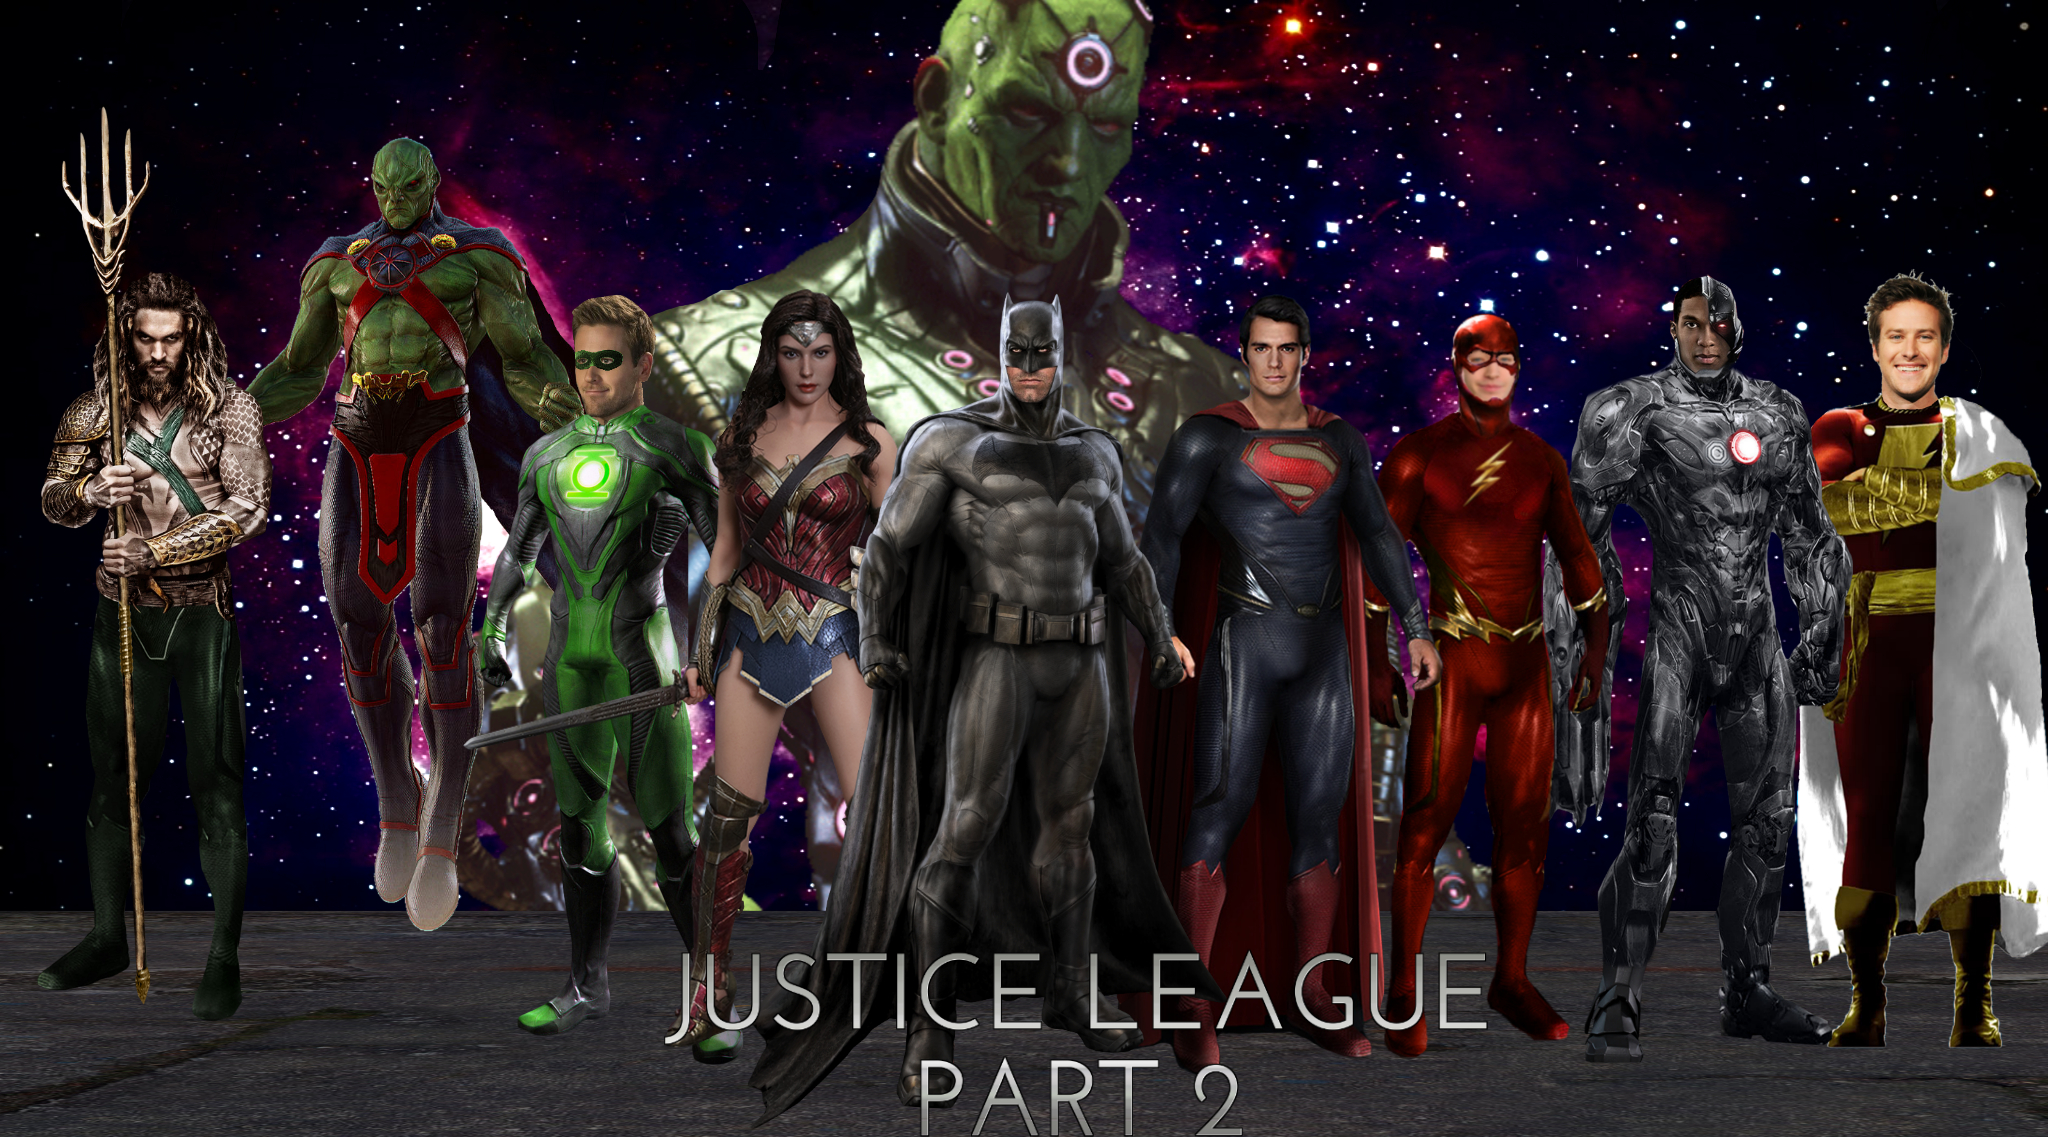 Justice league 2